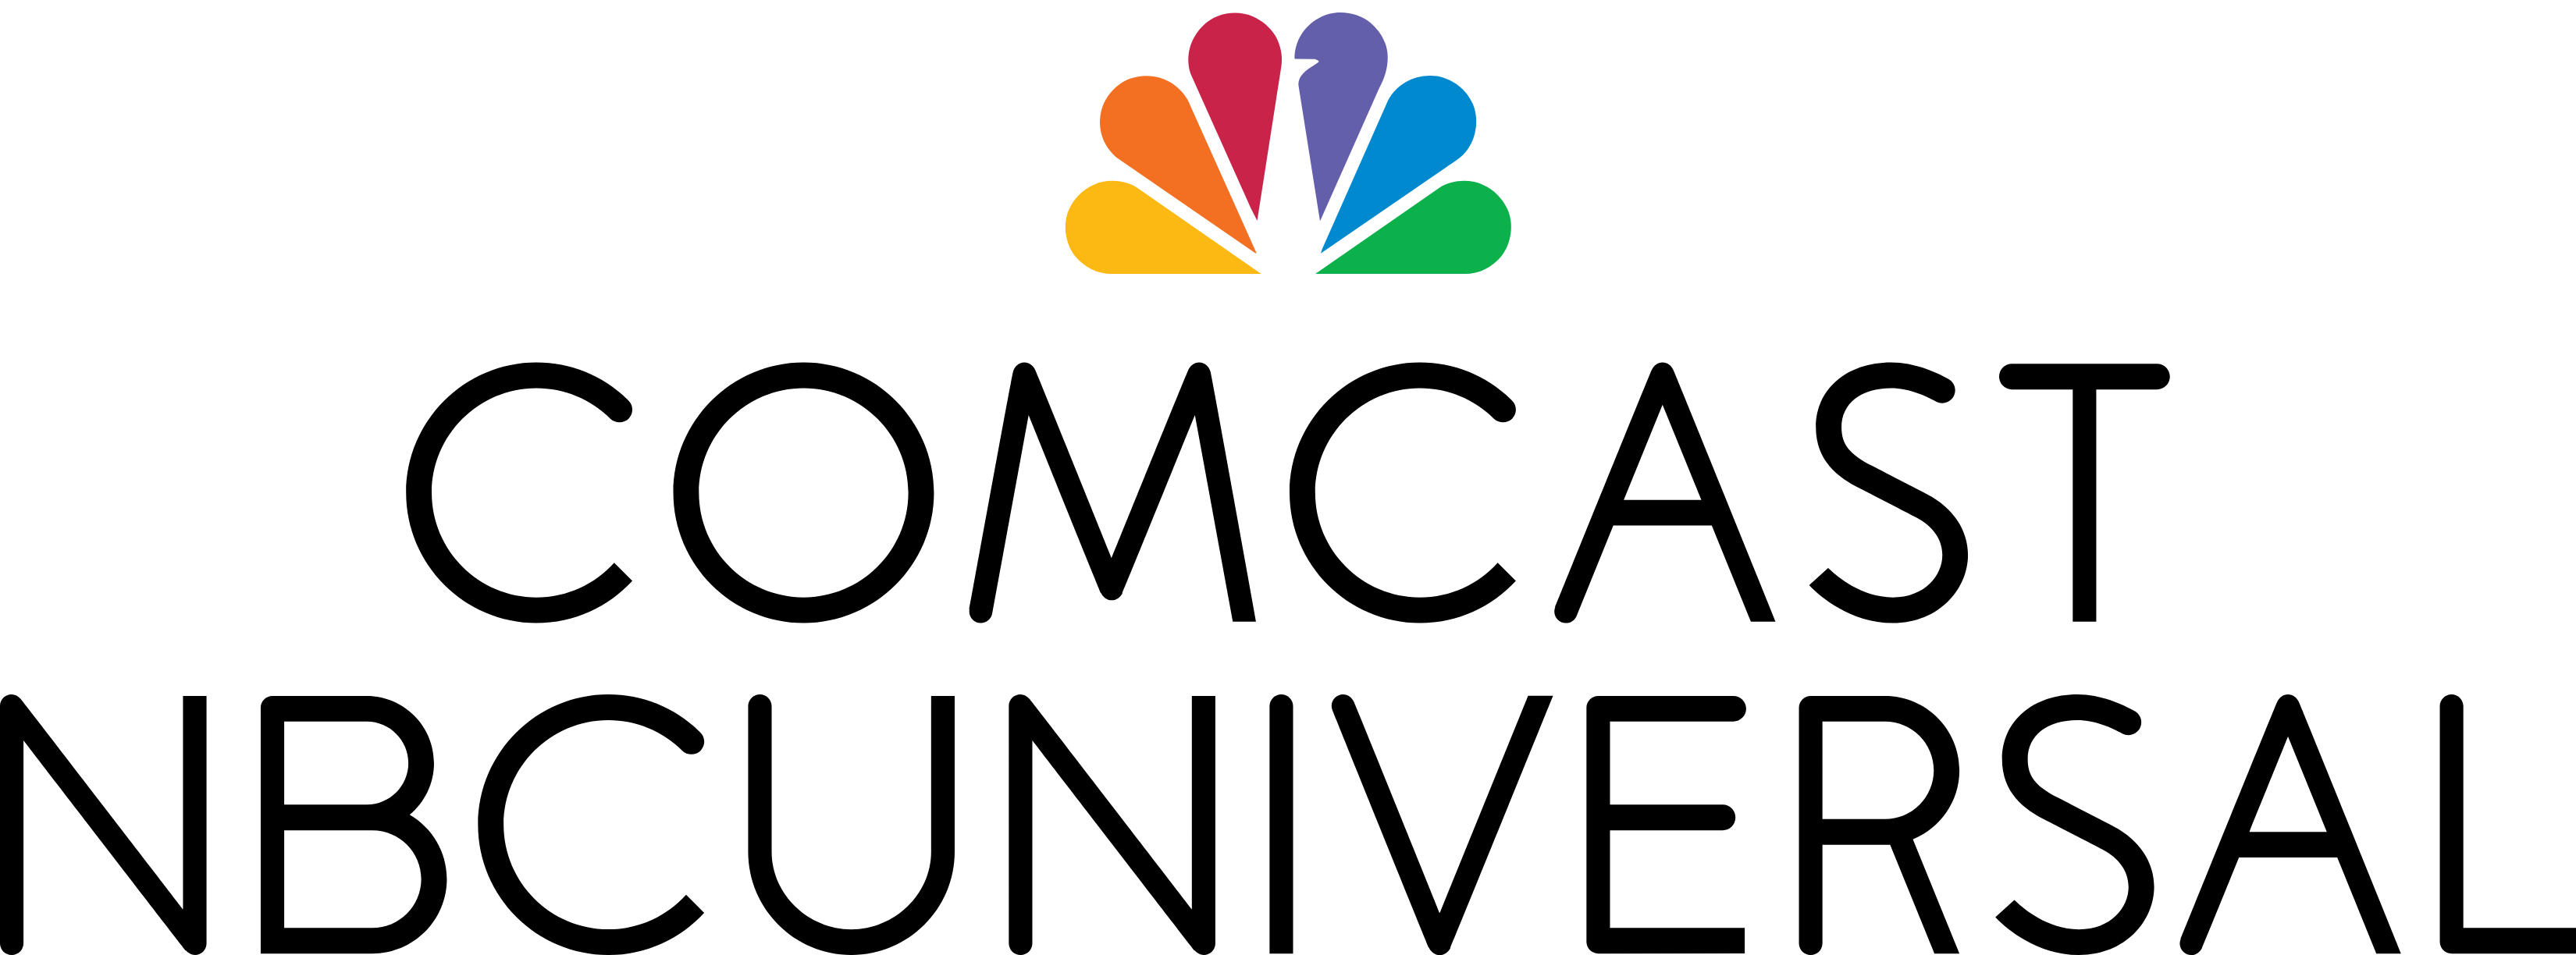 Comcast NBCUniversal Logo